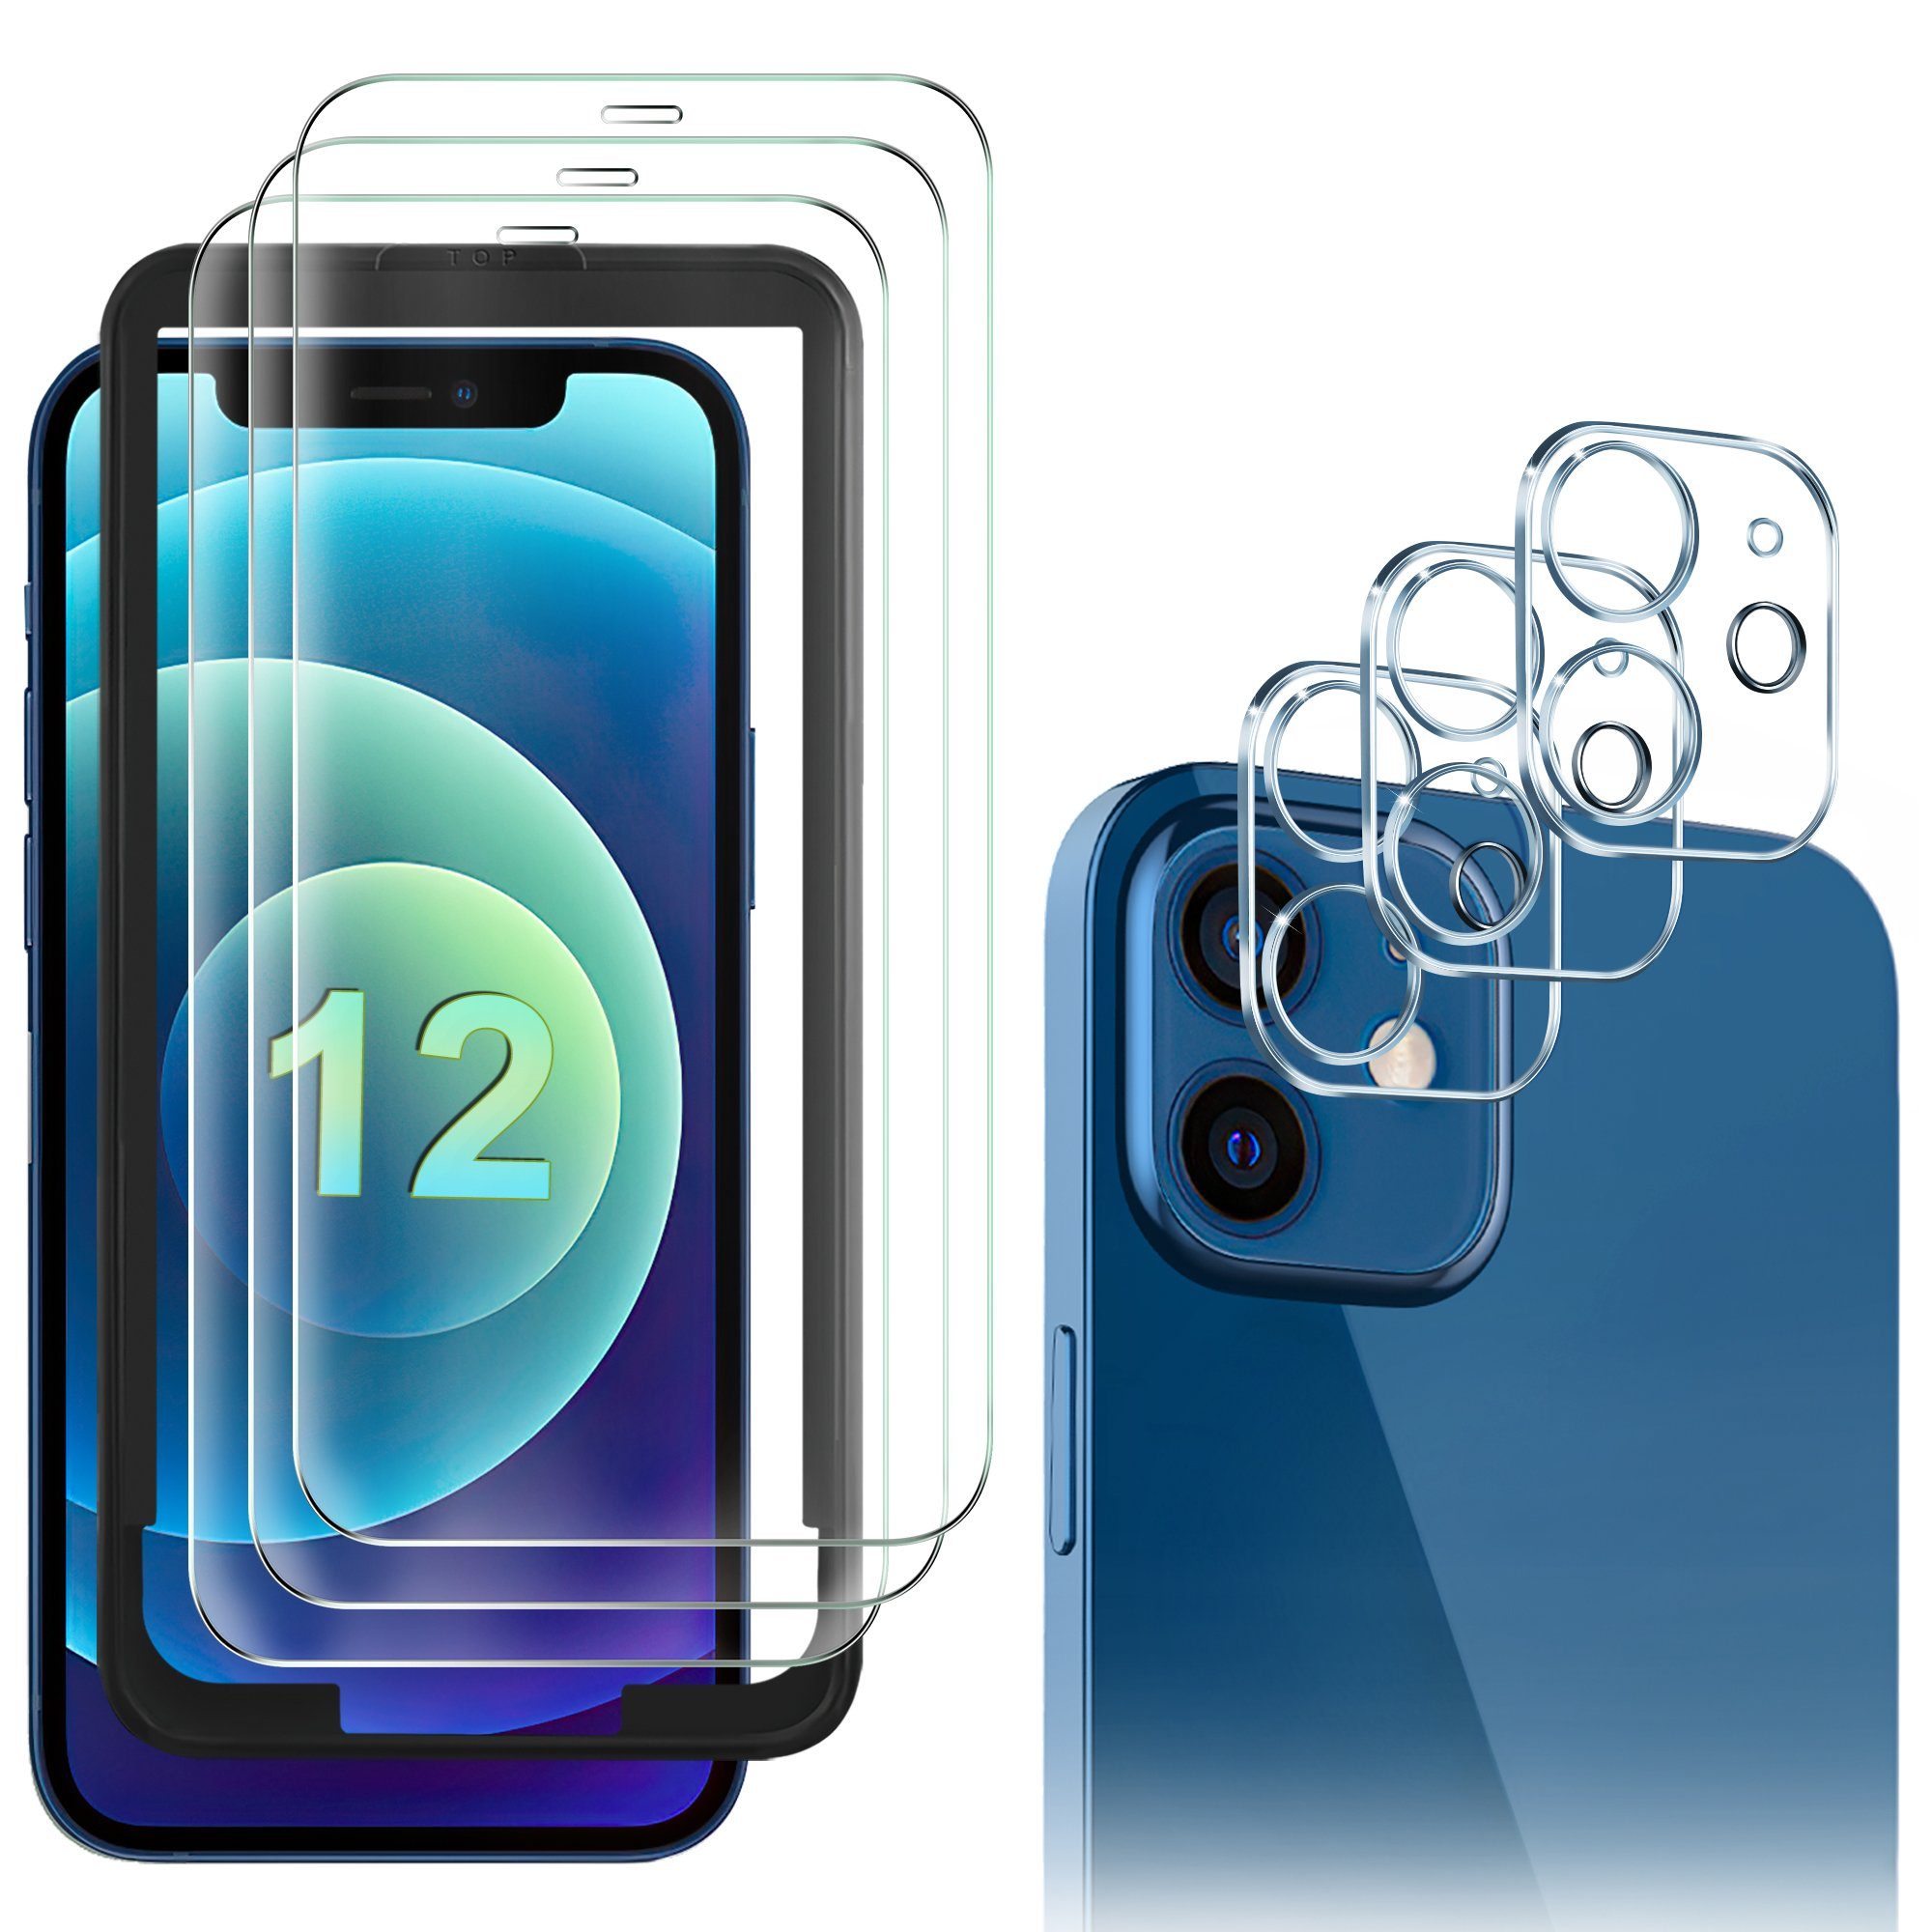 GESMA Schutzfolie Displayschutz Displayschutzfolie für iPhone 12, inklusive 3 Stück High-Definition-Display-Schutzglas, 3 Stück Kamera-Schutzglas, einem Installations-Locator und einem Installations-Kit